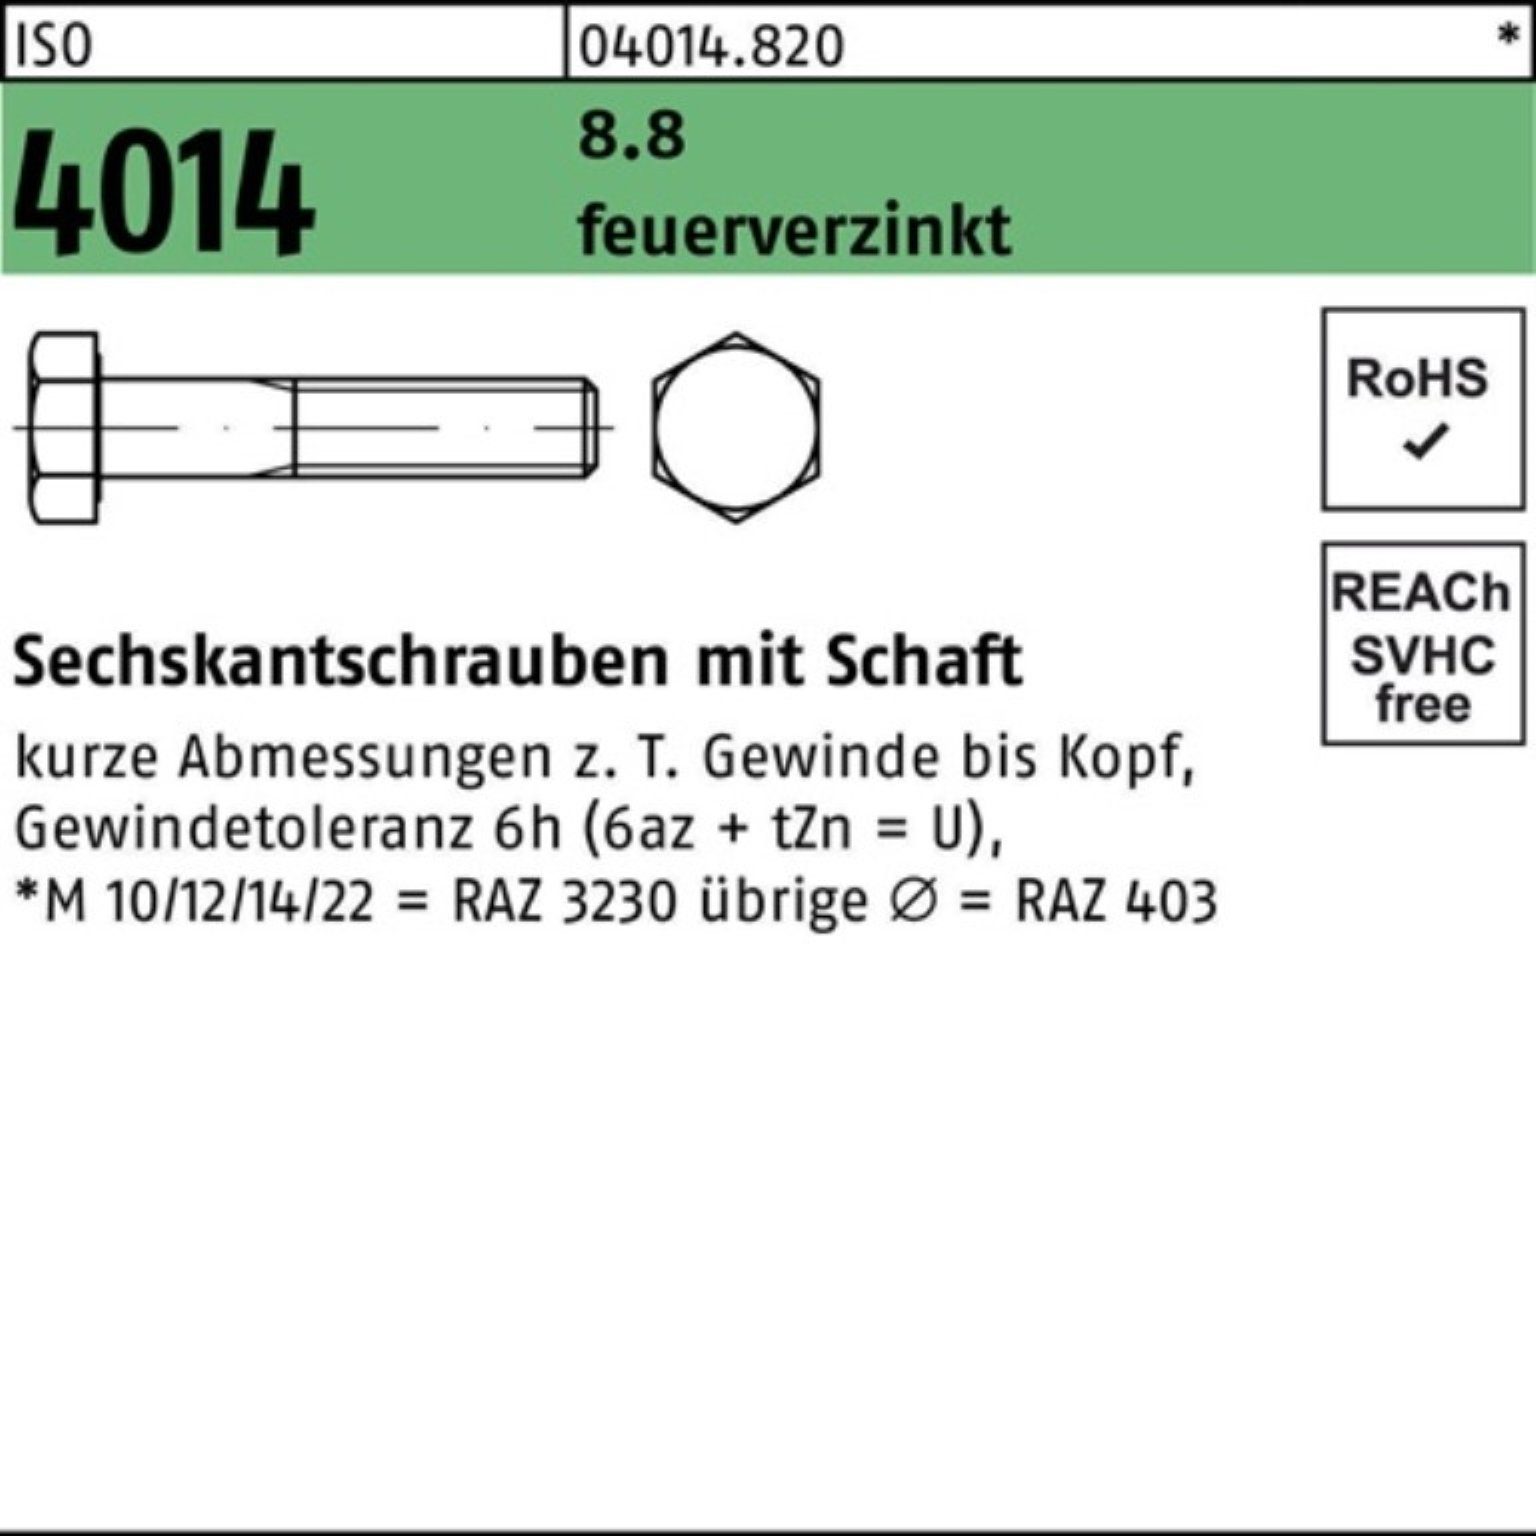 Bufab Sechskantschraube 100er Pack Sechskantschraube ISO 4014 Schaft M10x 120 8.8 feuerverz. 5